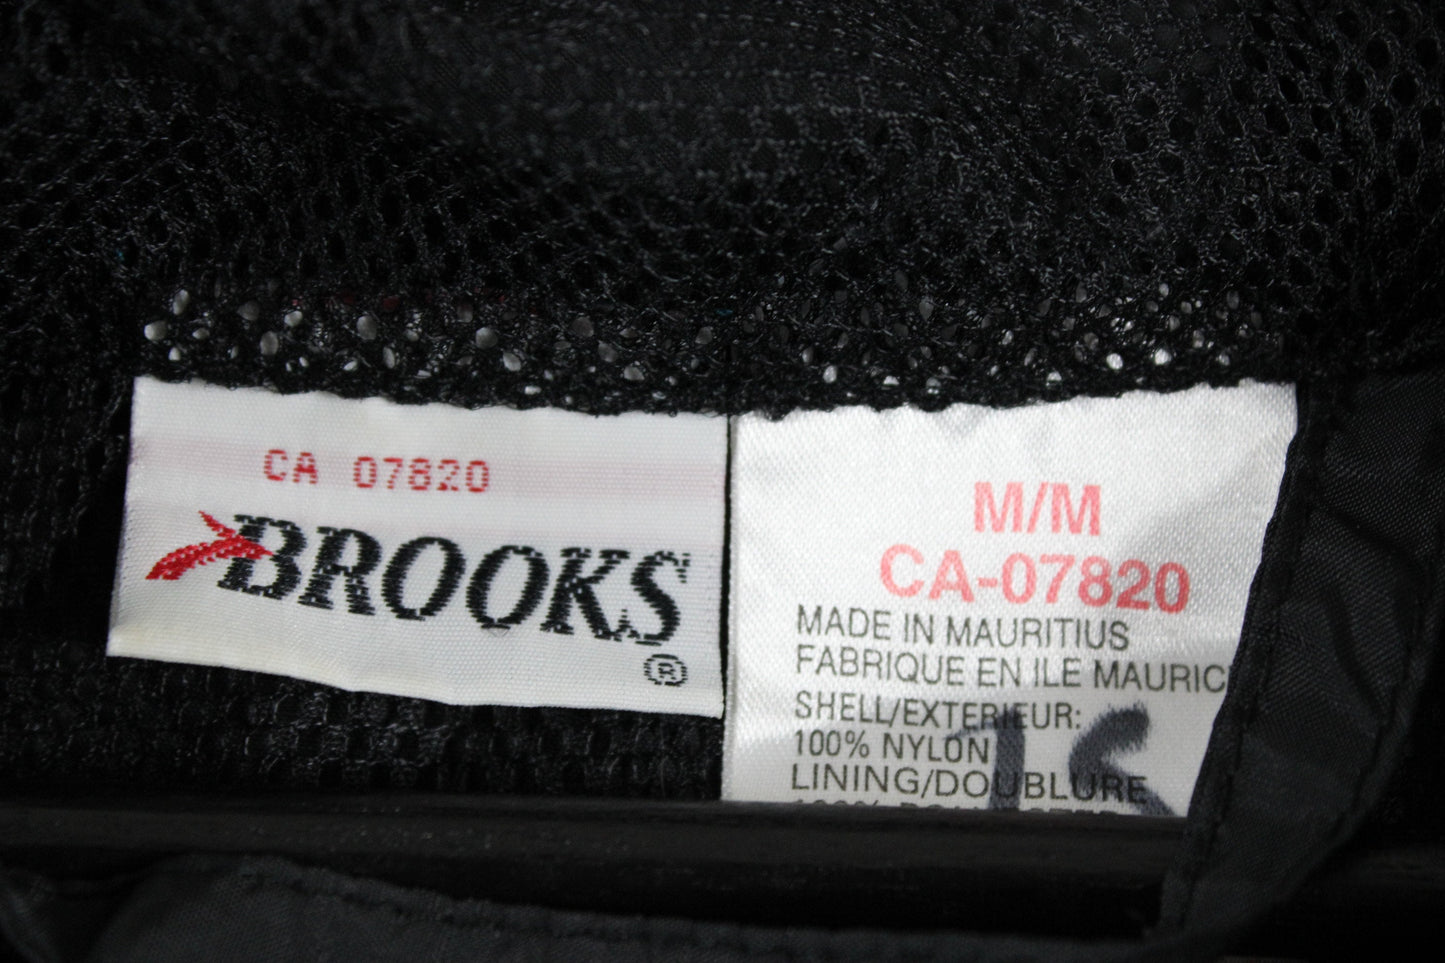 Brooks Ski-Jacket / 90s Vintage Neon Windbreaker Anorak Coat / Hip-Hop Clothing / Streetwear